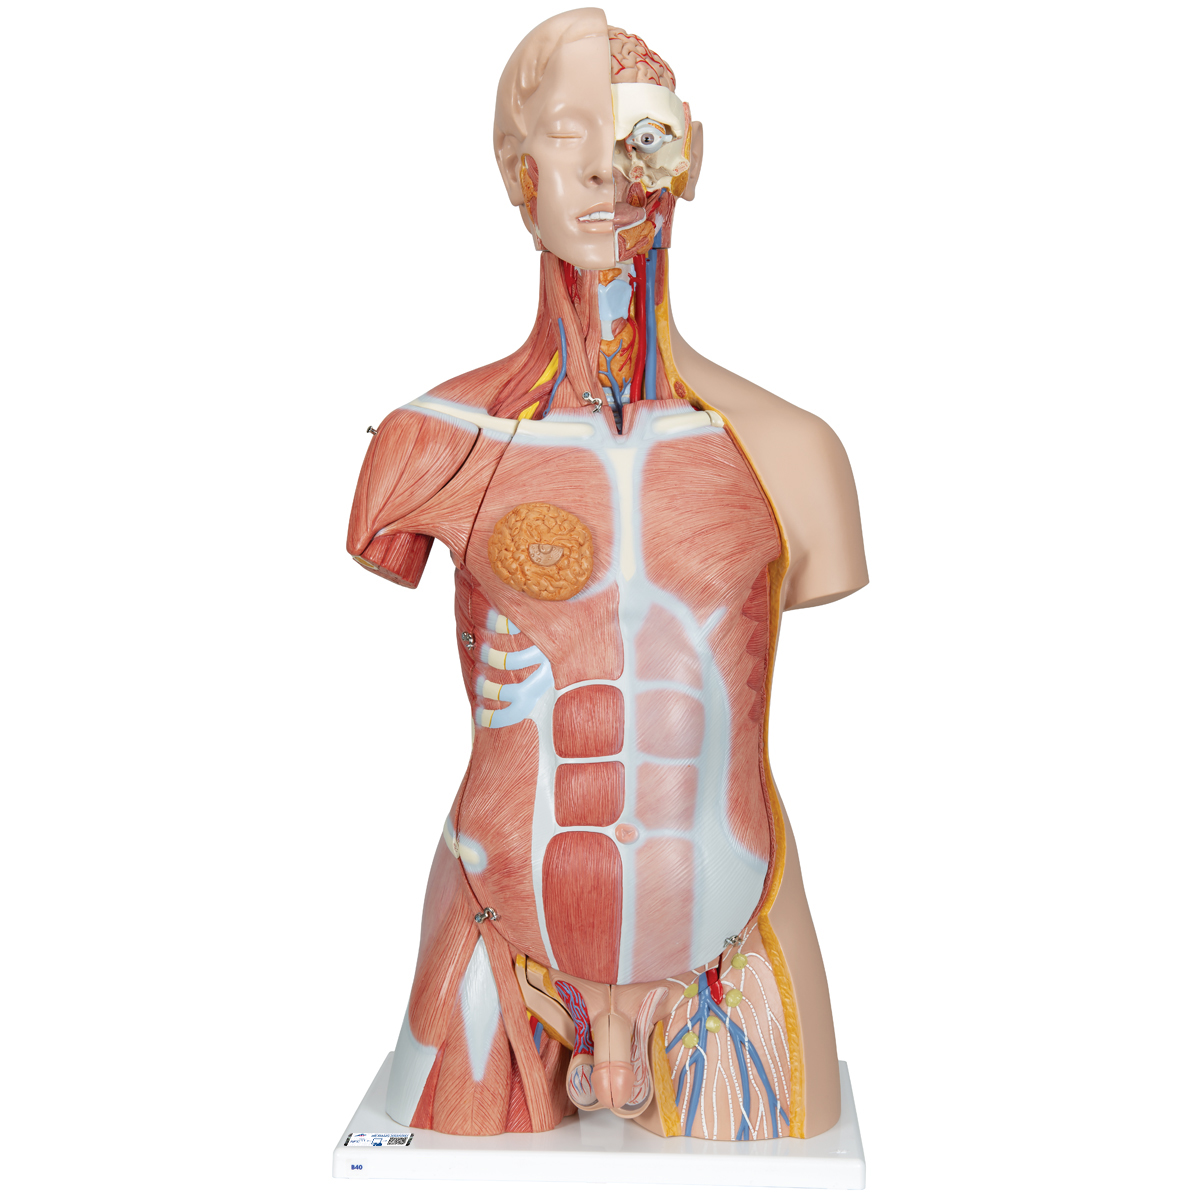 Luxus Muskel Torso Modell, mit weiblichen & männlichen Geschlechtsorganen, 31-teilig - 3B Smart Anatomy, Bestellnummer 1000203, B40, 3B Scientific